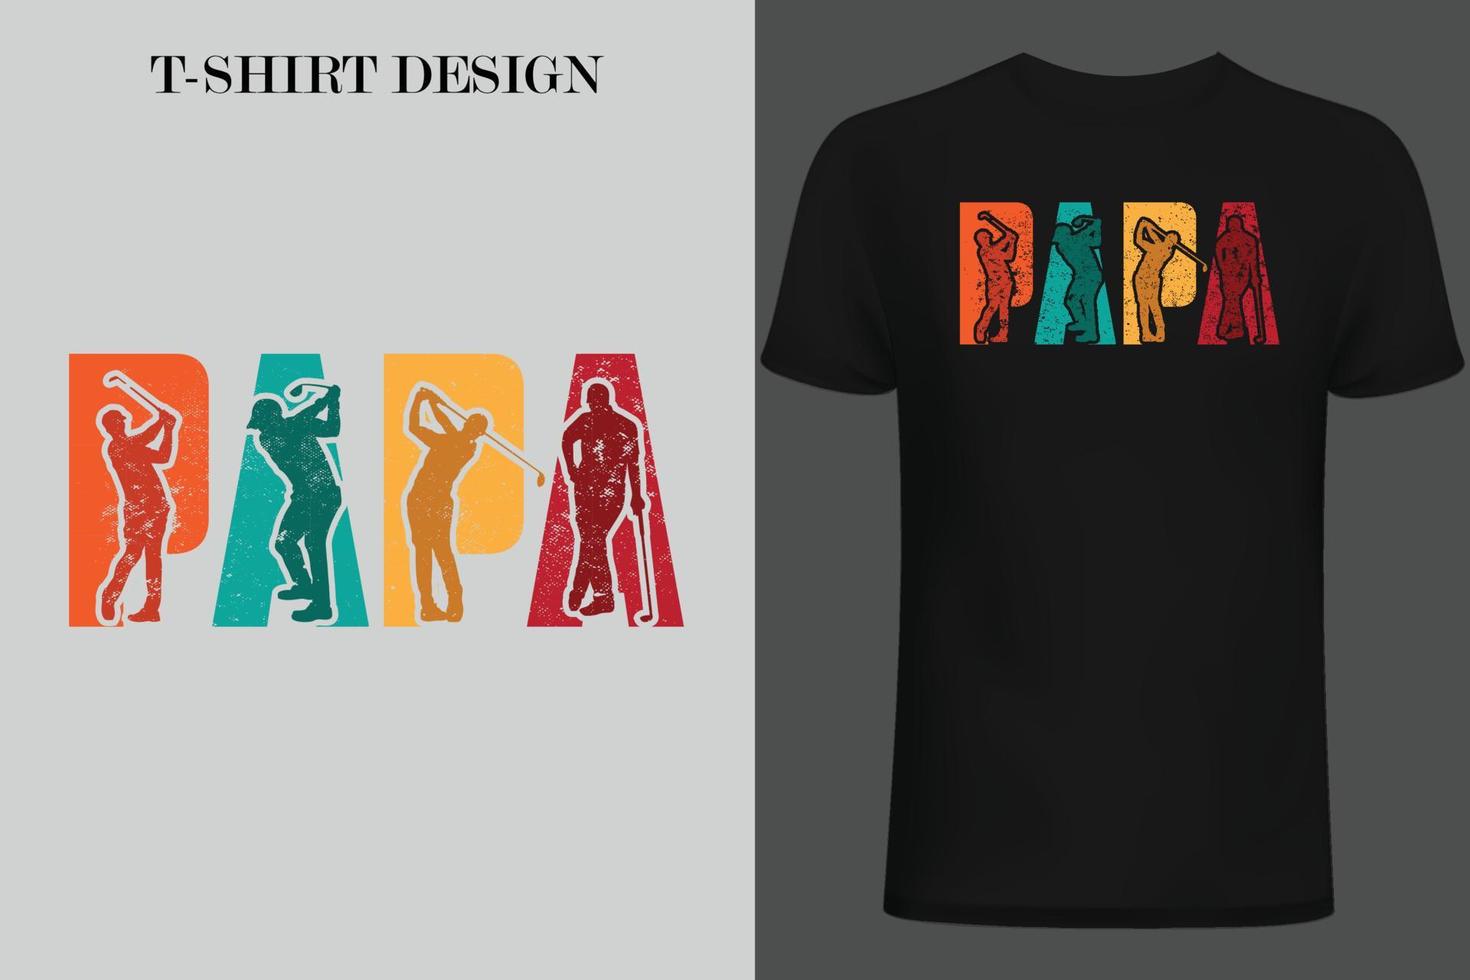 conception de t-shirt de golf. conception de t-shirt vintage de golf. conception de t-shirt de citations de golf. vecteur